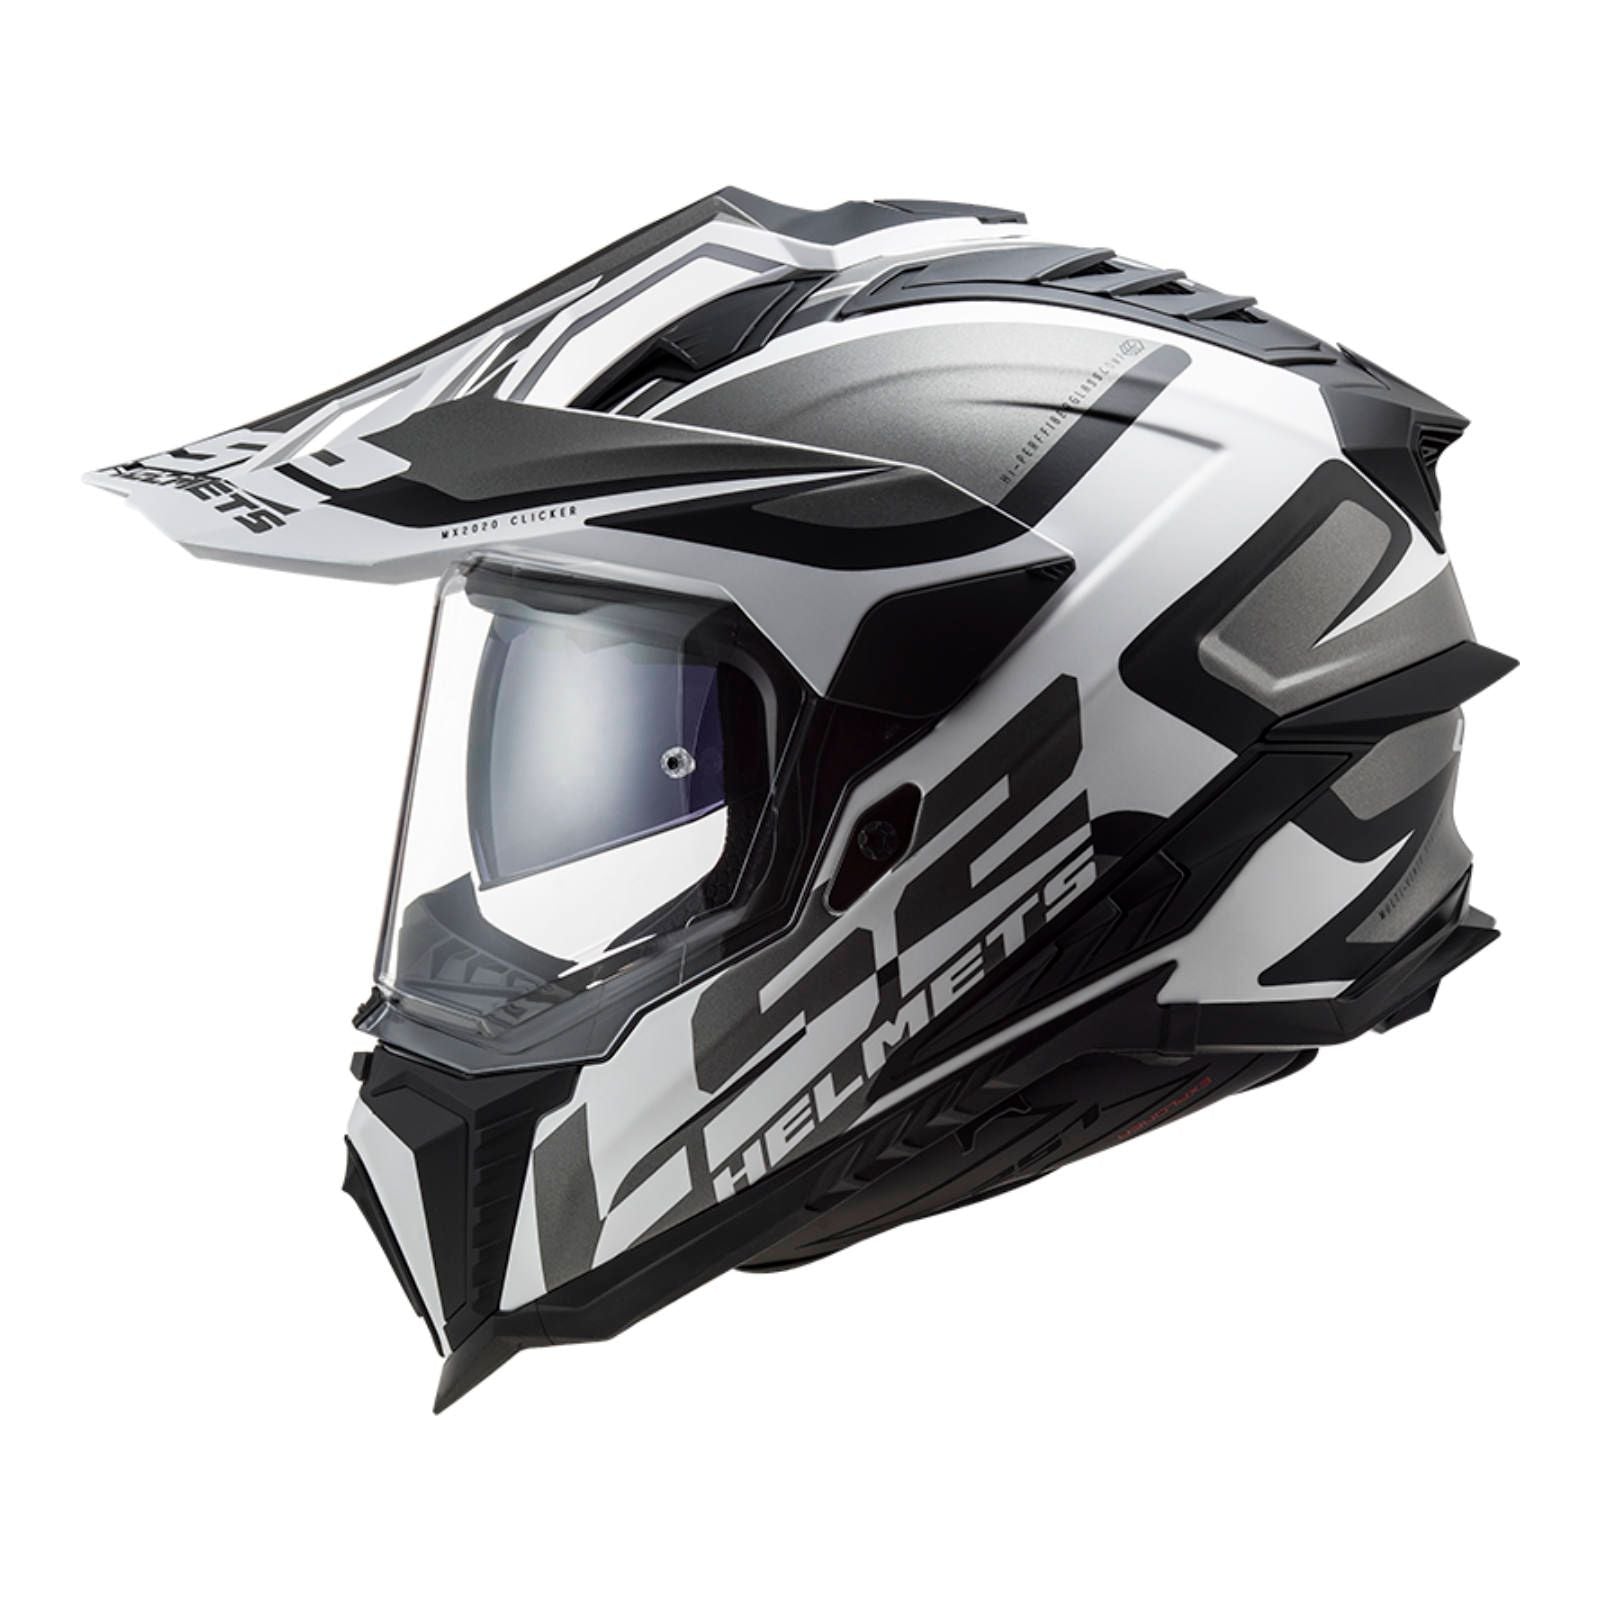 New LS2 Explorer Alter Helmet - Matte Black / White (2XL) #LS2MX701ALTMBW2XL